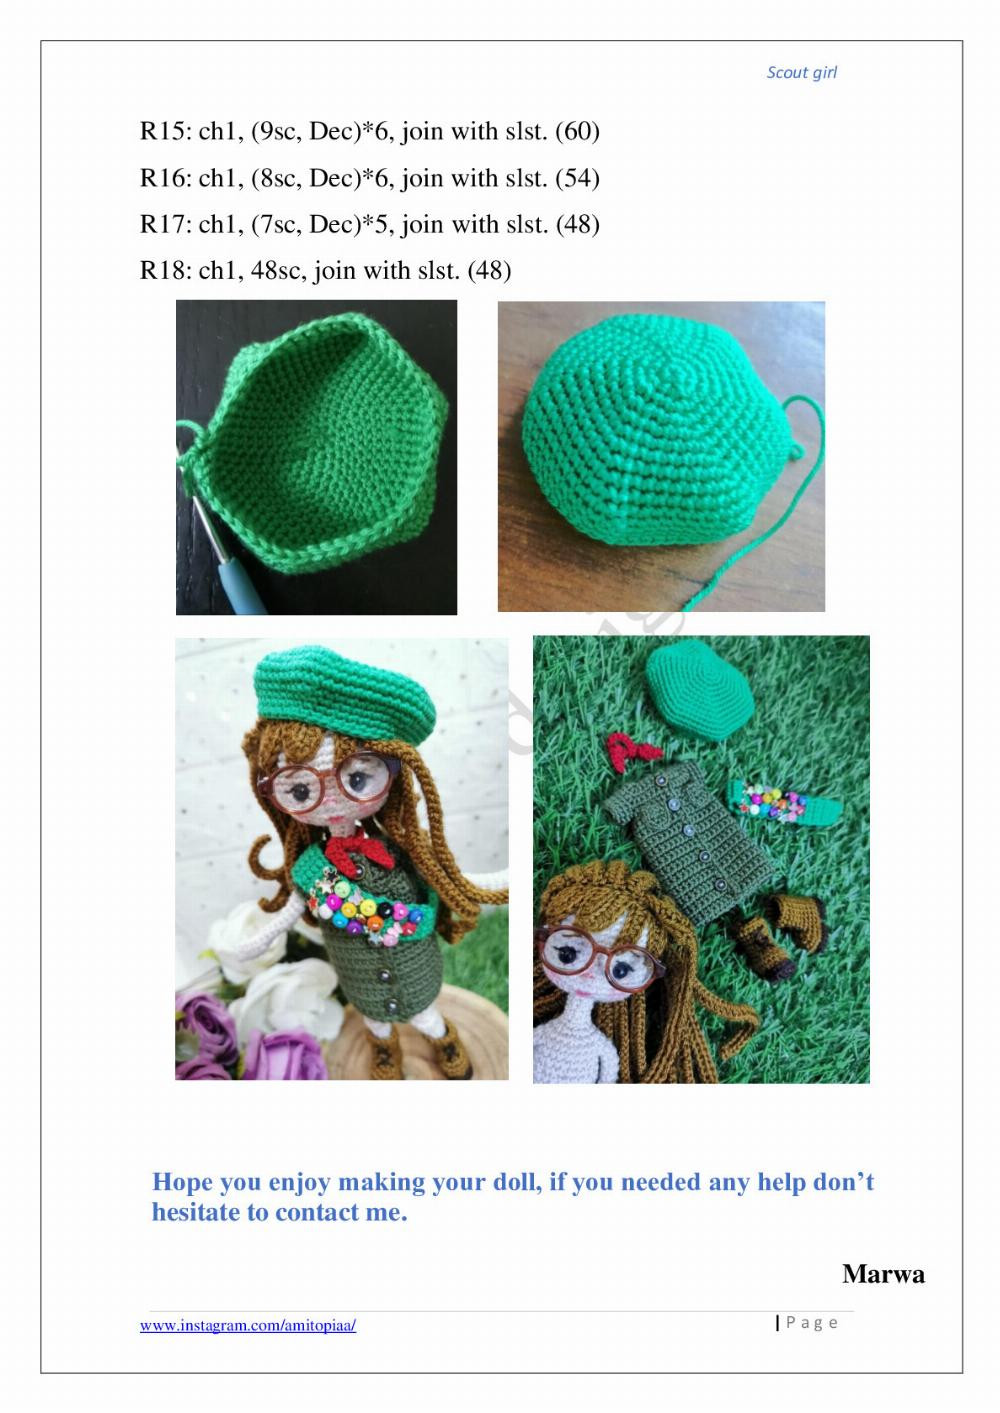 Scout girl crochet pattern